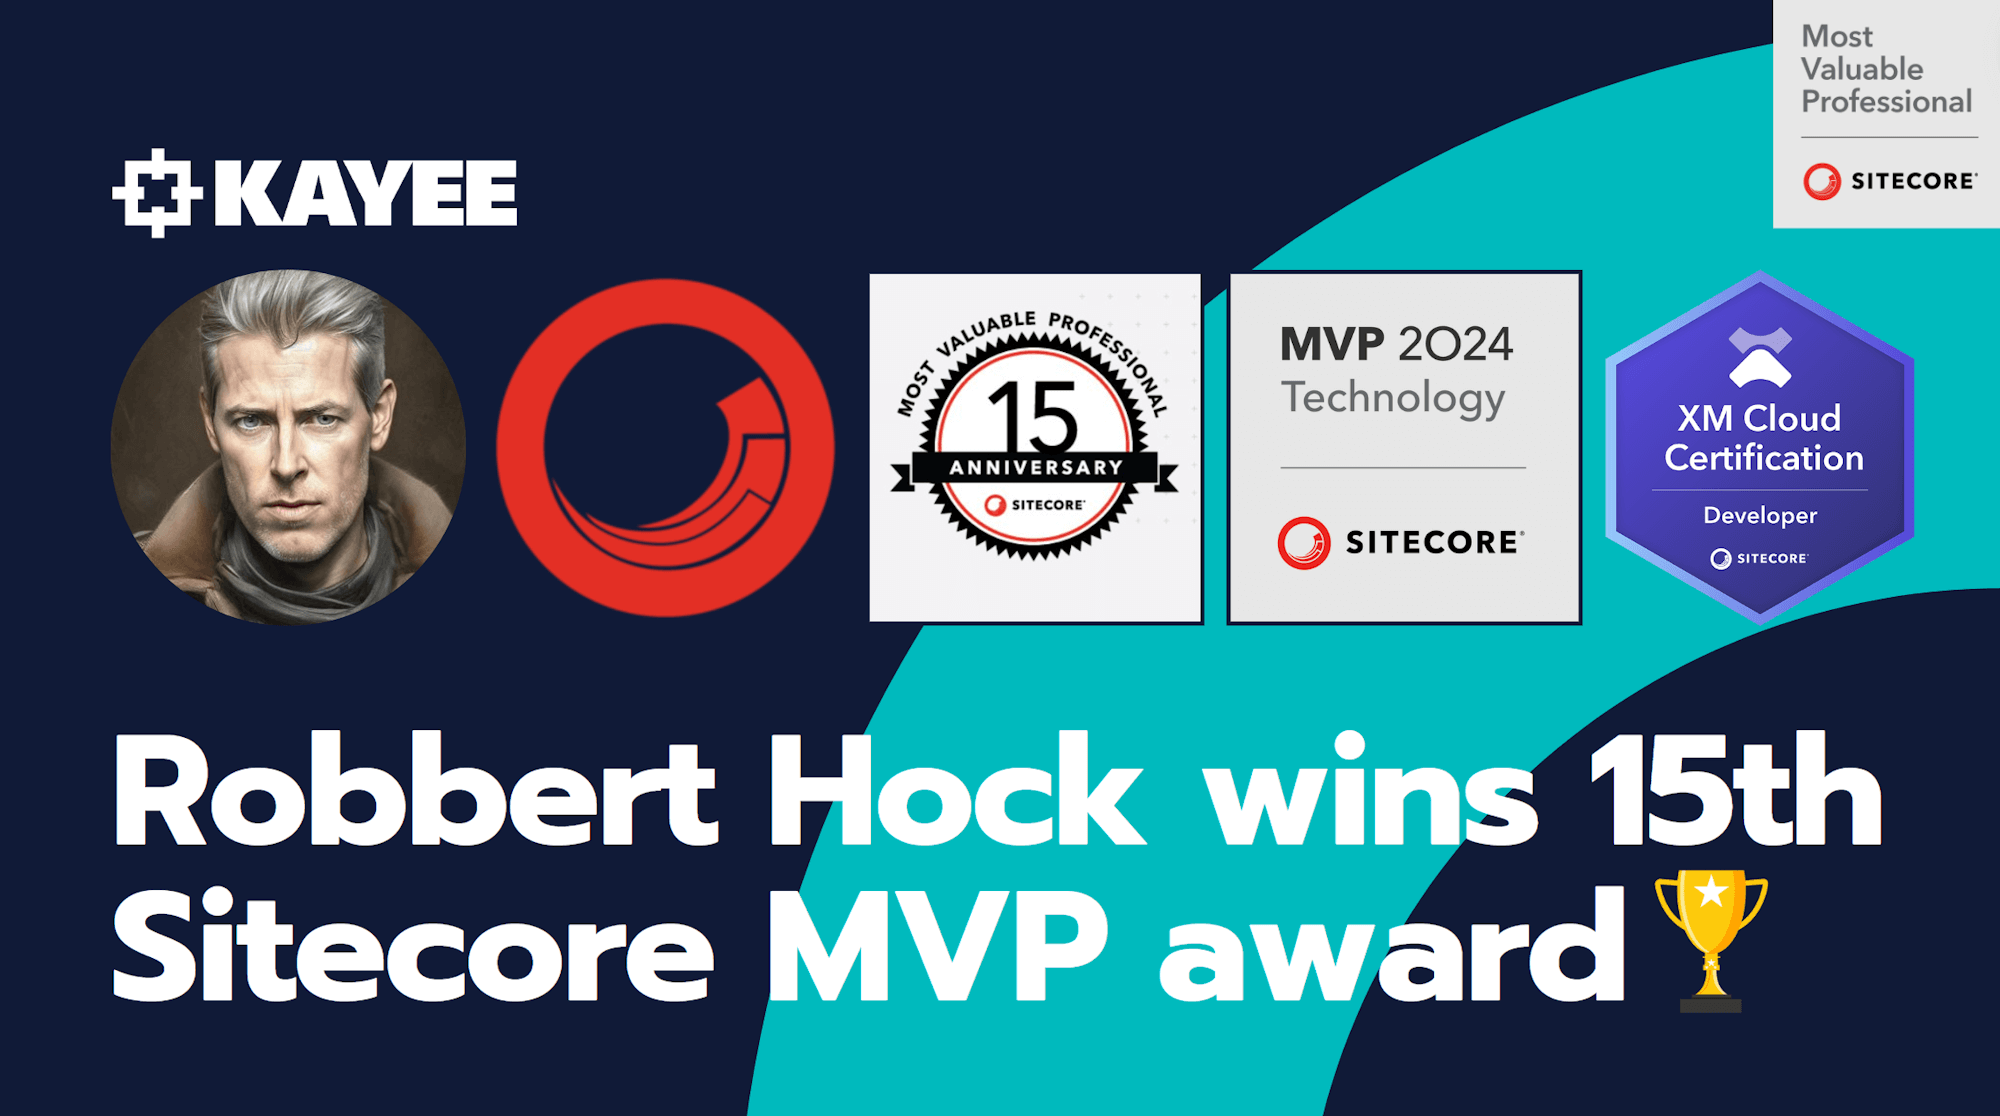 Robbert Hock wins 15th Sitecore MVP award